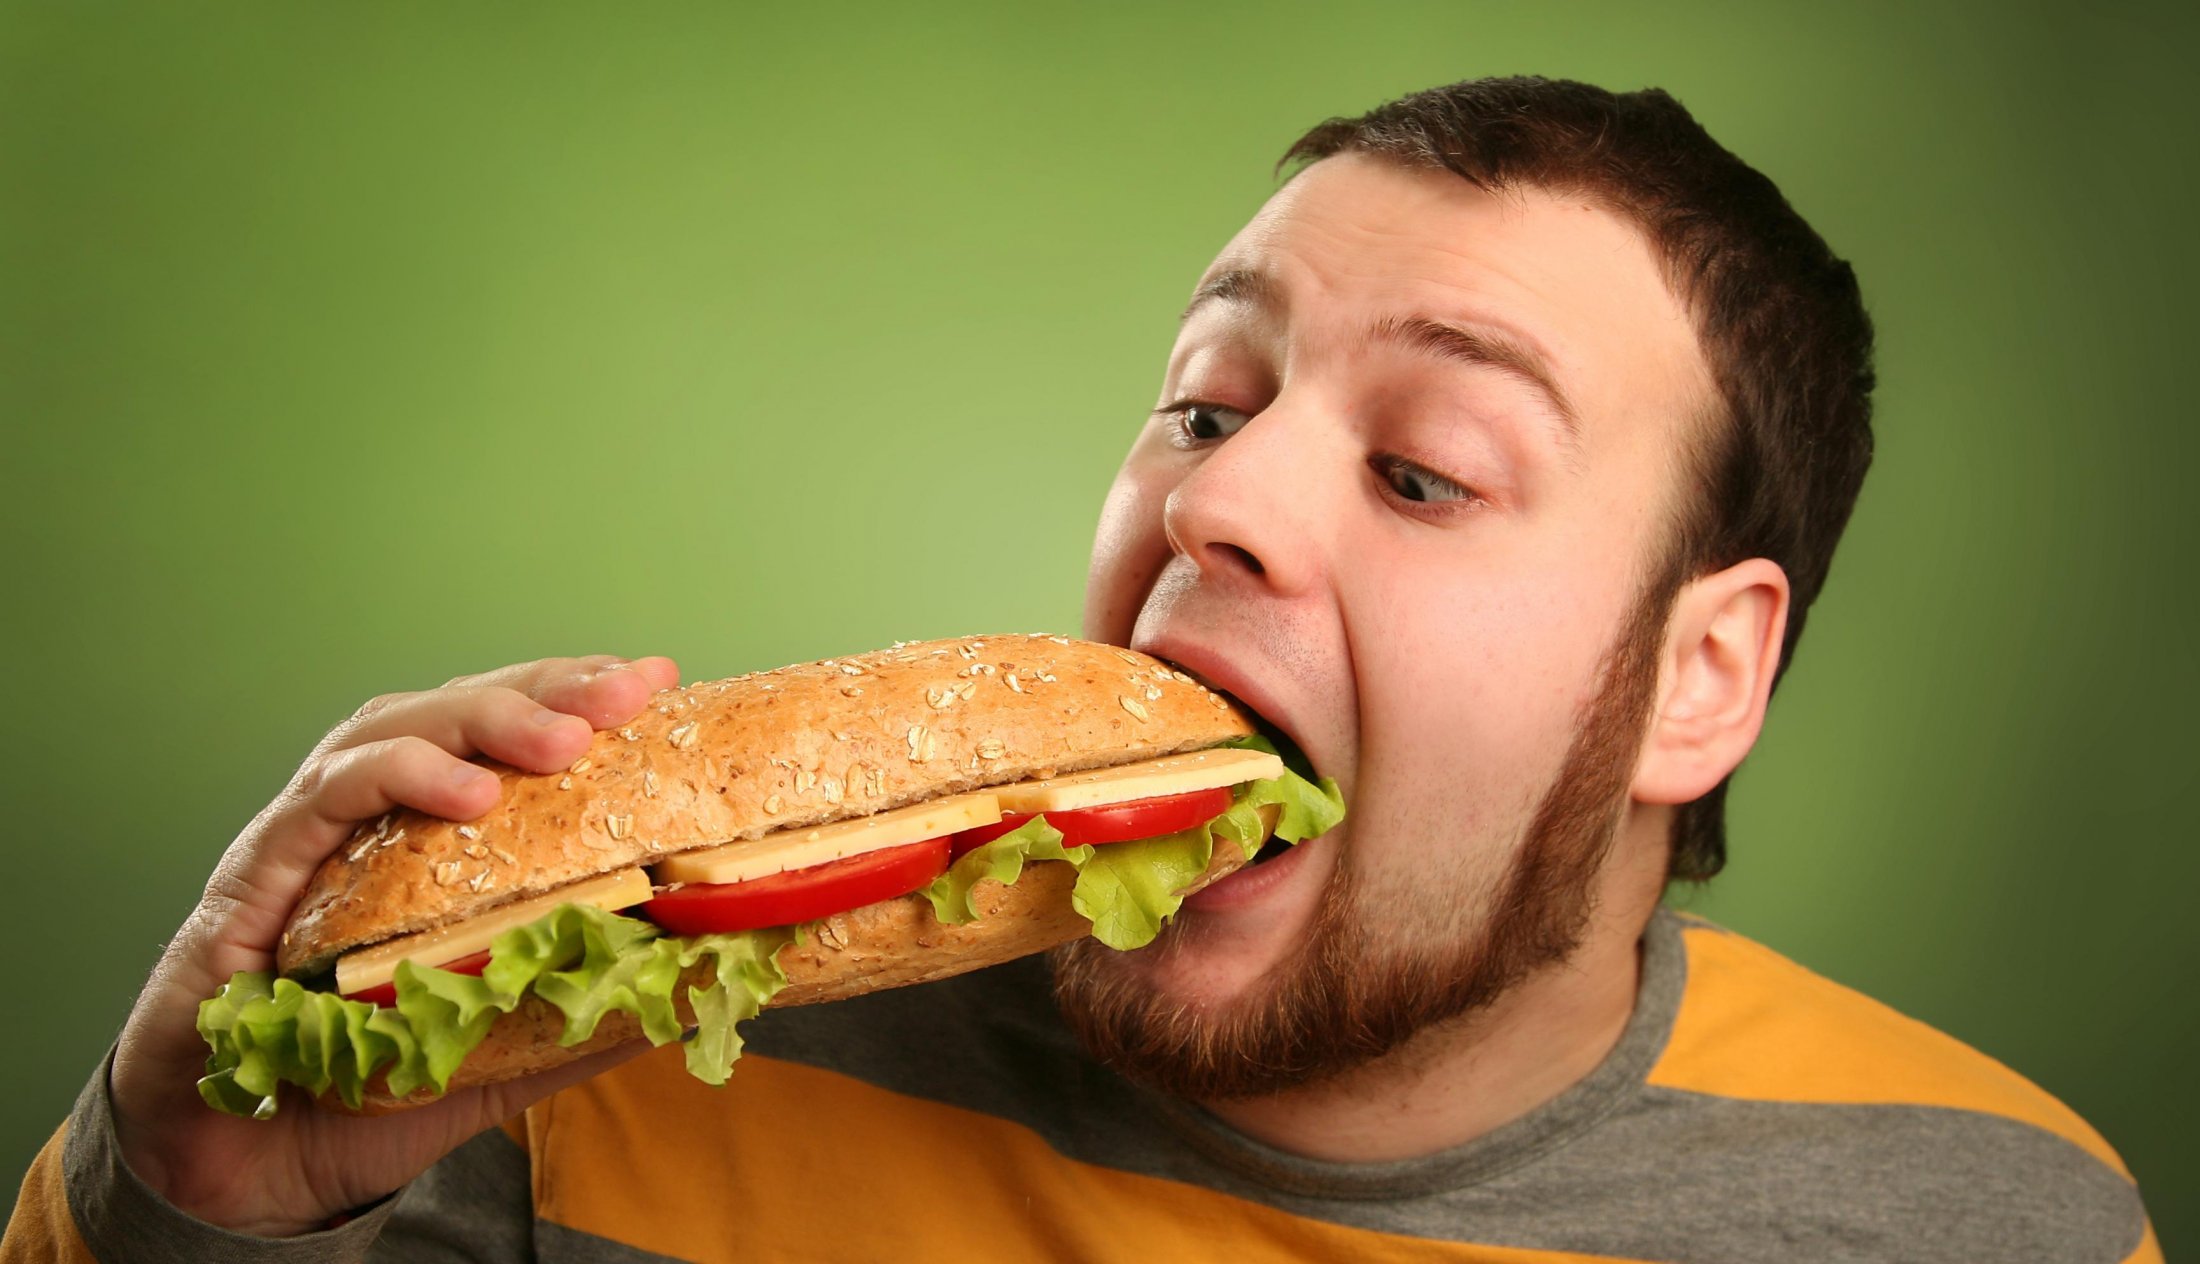 Съесть совсем. Человек бутерброд. Человек кушает. Ест бутерброд. Человек с едой.